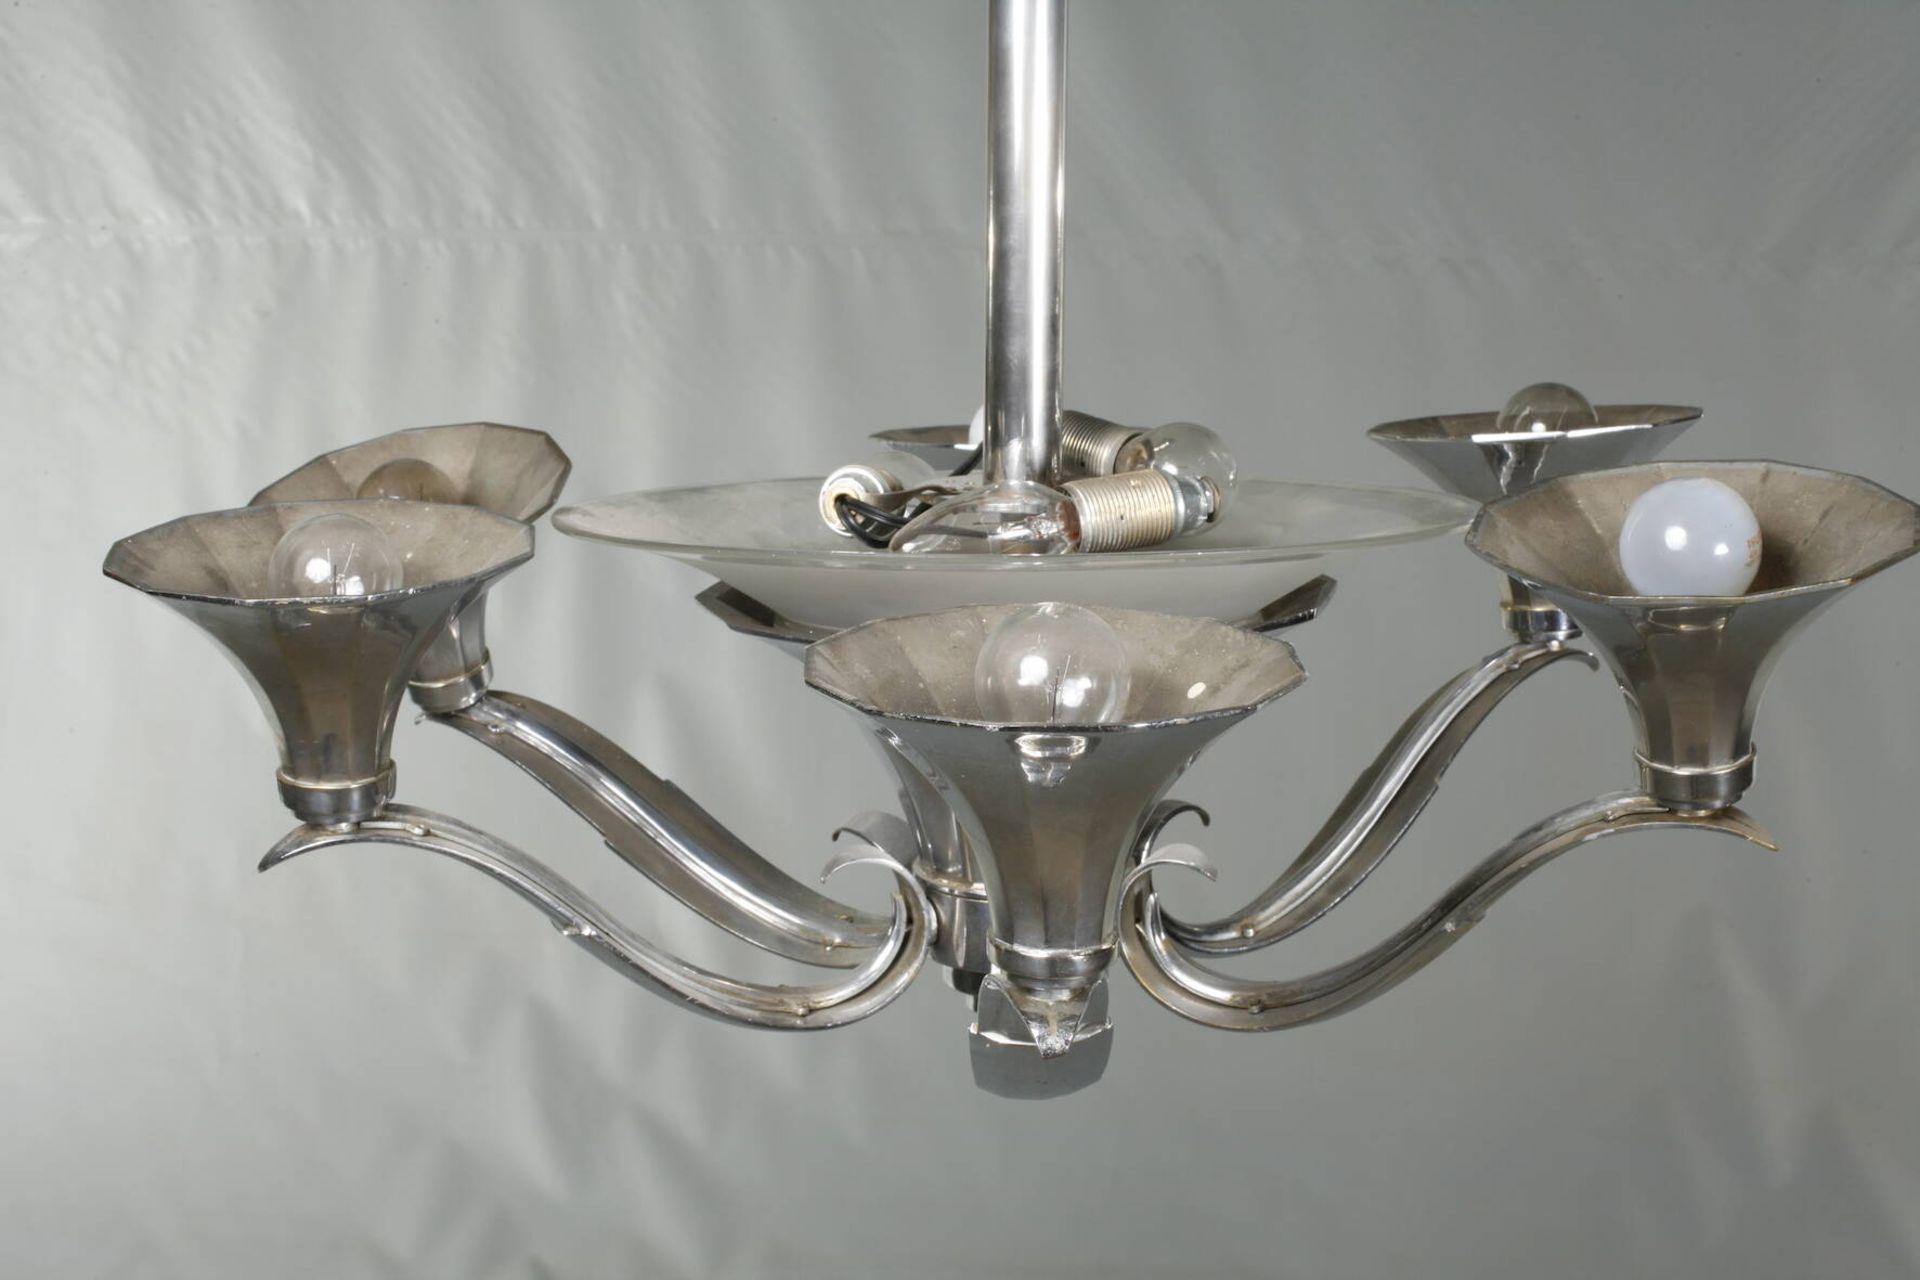 Deckenlampe Art découm 1930, verchromtes Metallgestänge mit zentralem trichterförmigen Schirm aus - Bild 3 aus 4